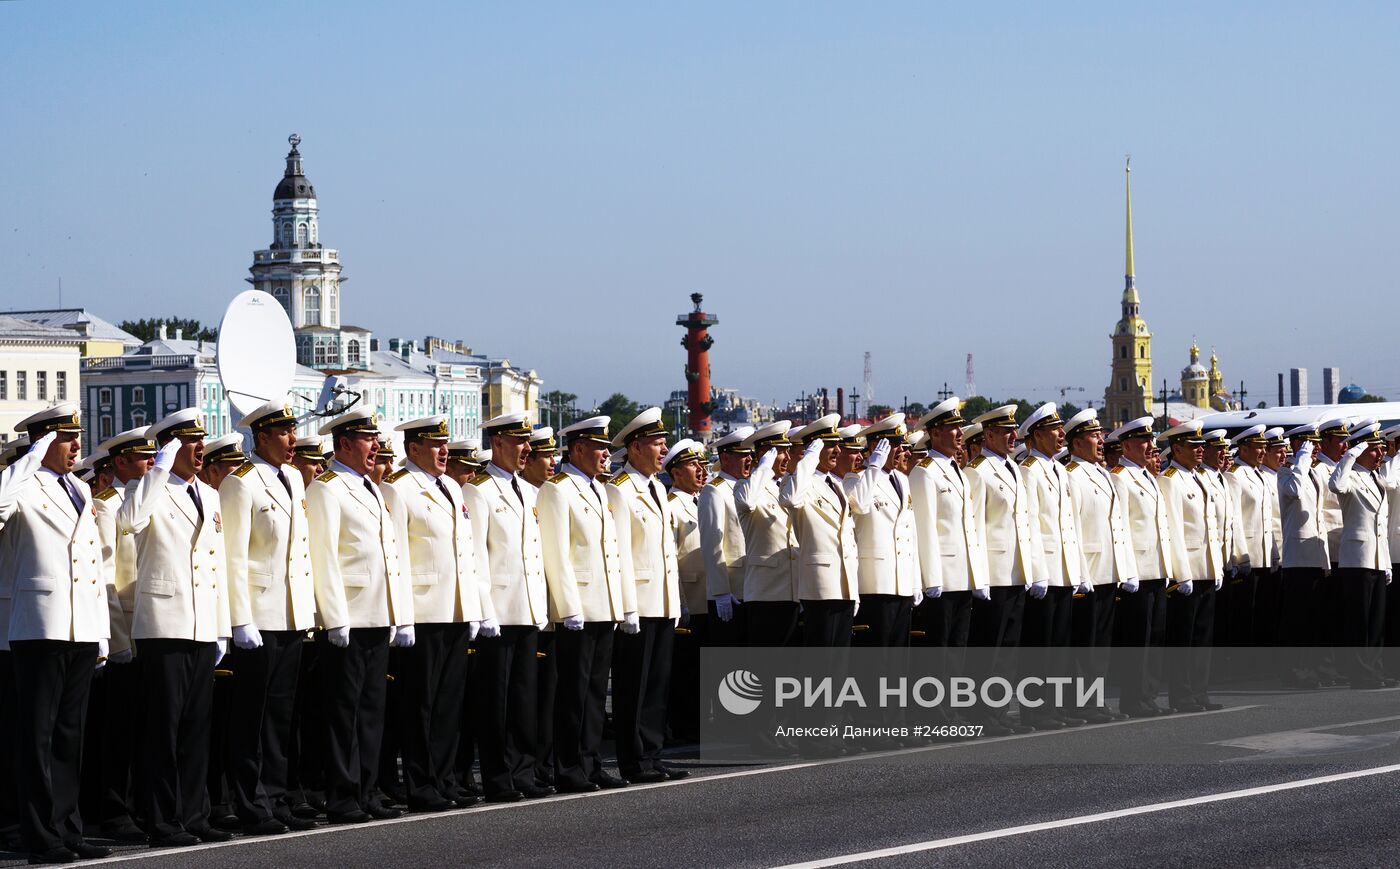 Генеральная репетиция парада кораблей в Санкт-Петербурге